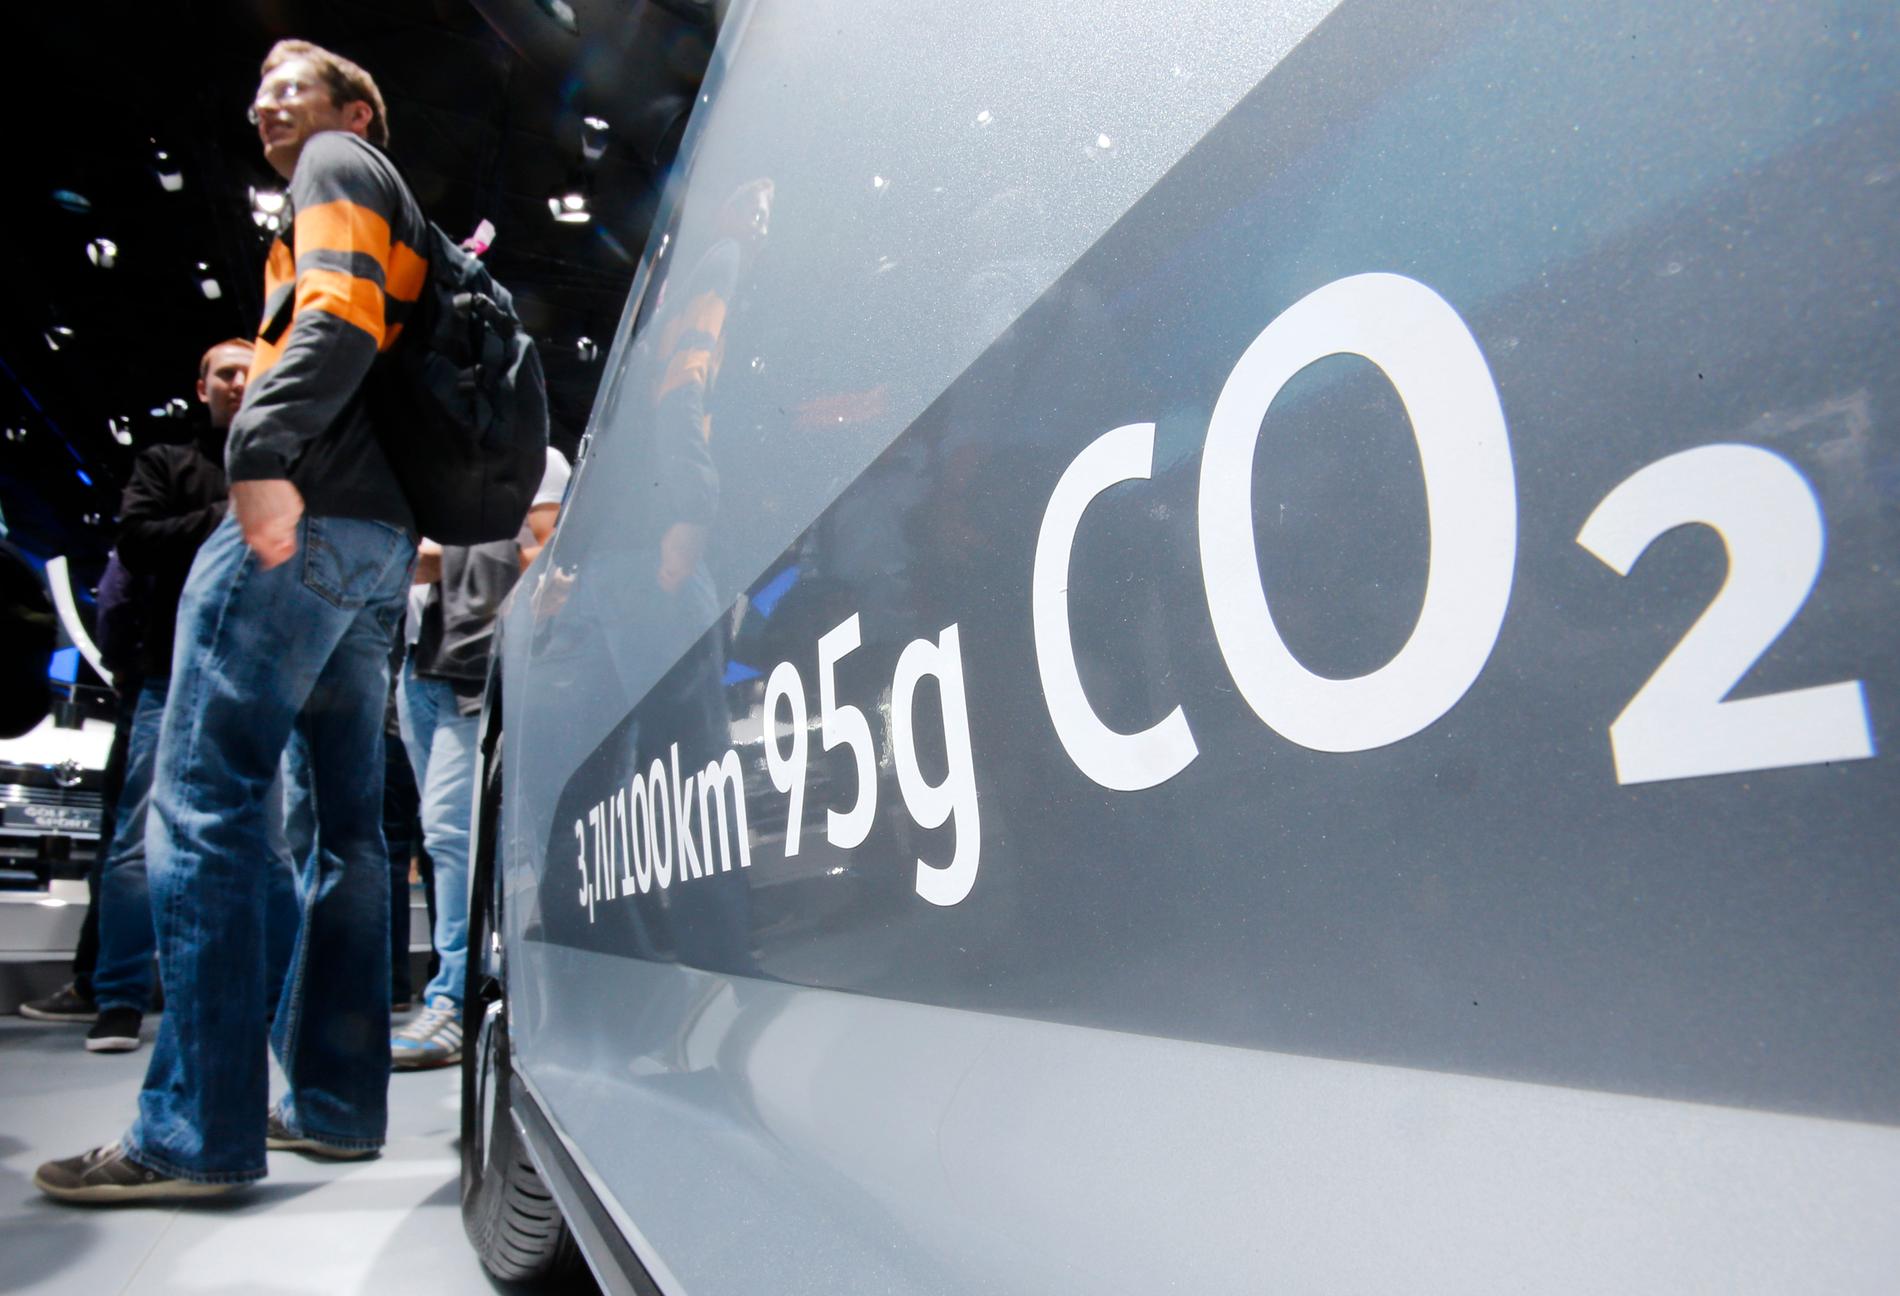 Mängden koldioxidutsläpp redovisas på en Volkswagen Passat Diesel på bilmässan i Frankfurt 2015.